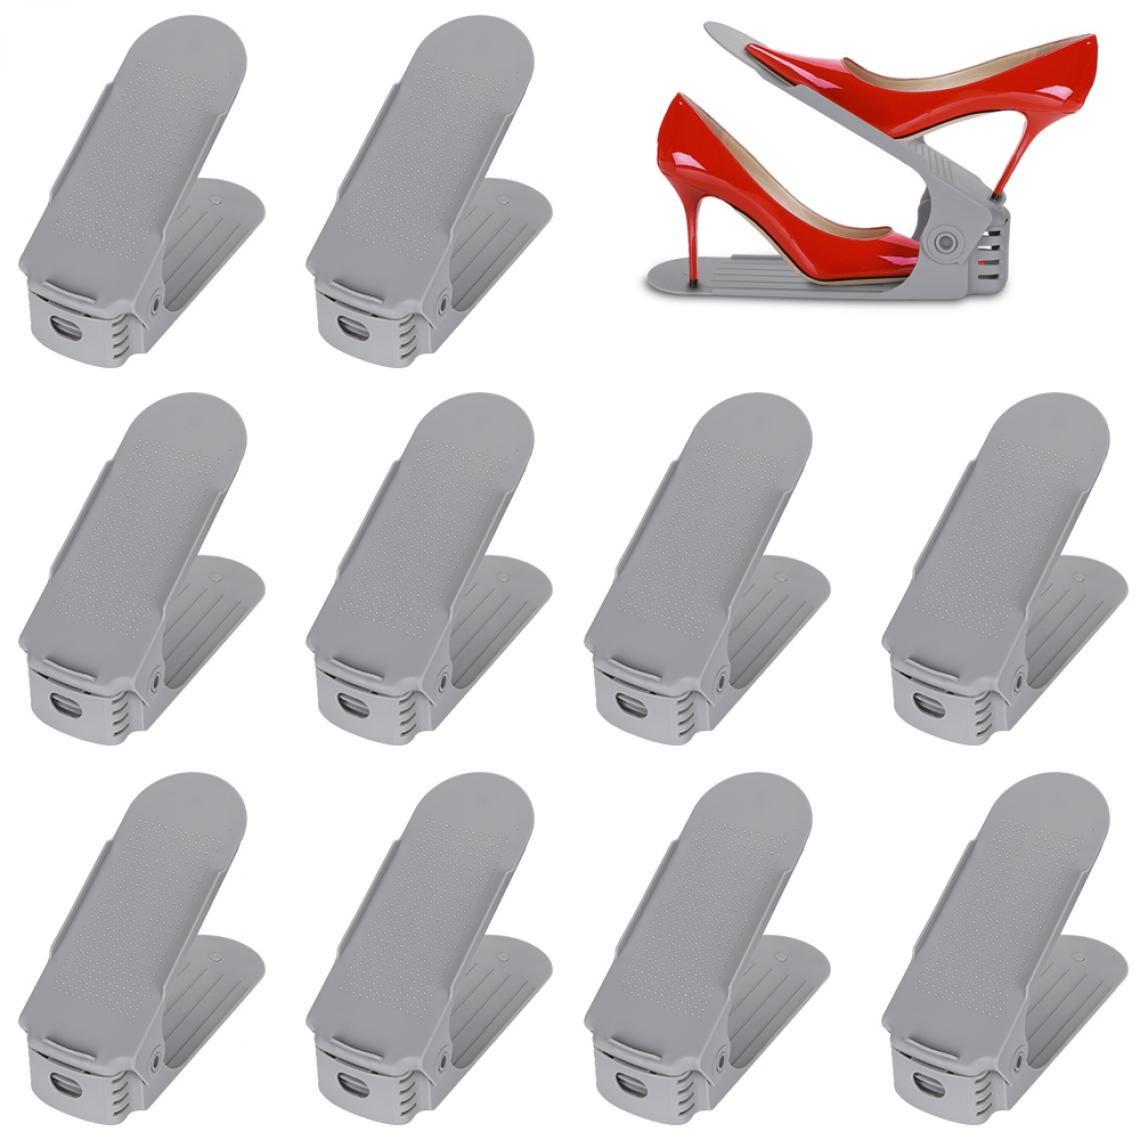 Einfeben - 10X porte-chaussures étagère à chaussures réglable étagères à chaussures ensemble réglable empileur de chaussures gris - Rangements à chaussures